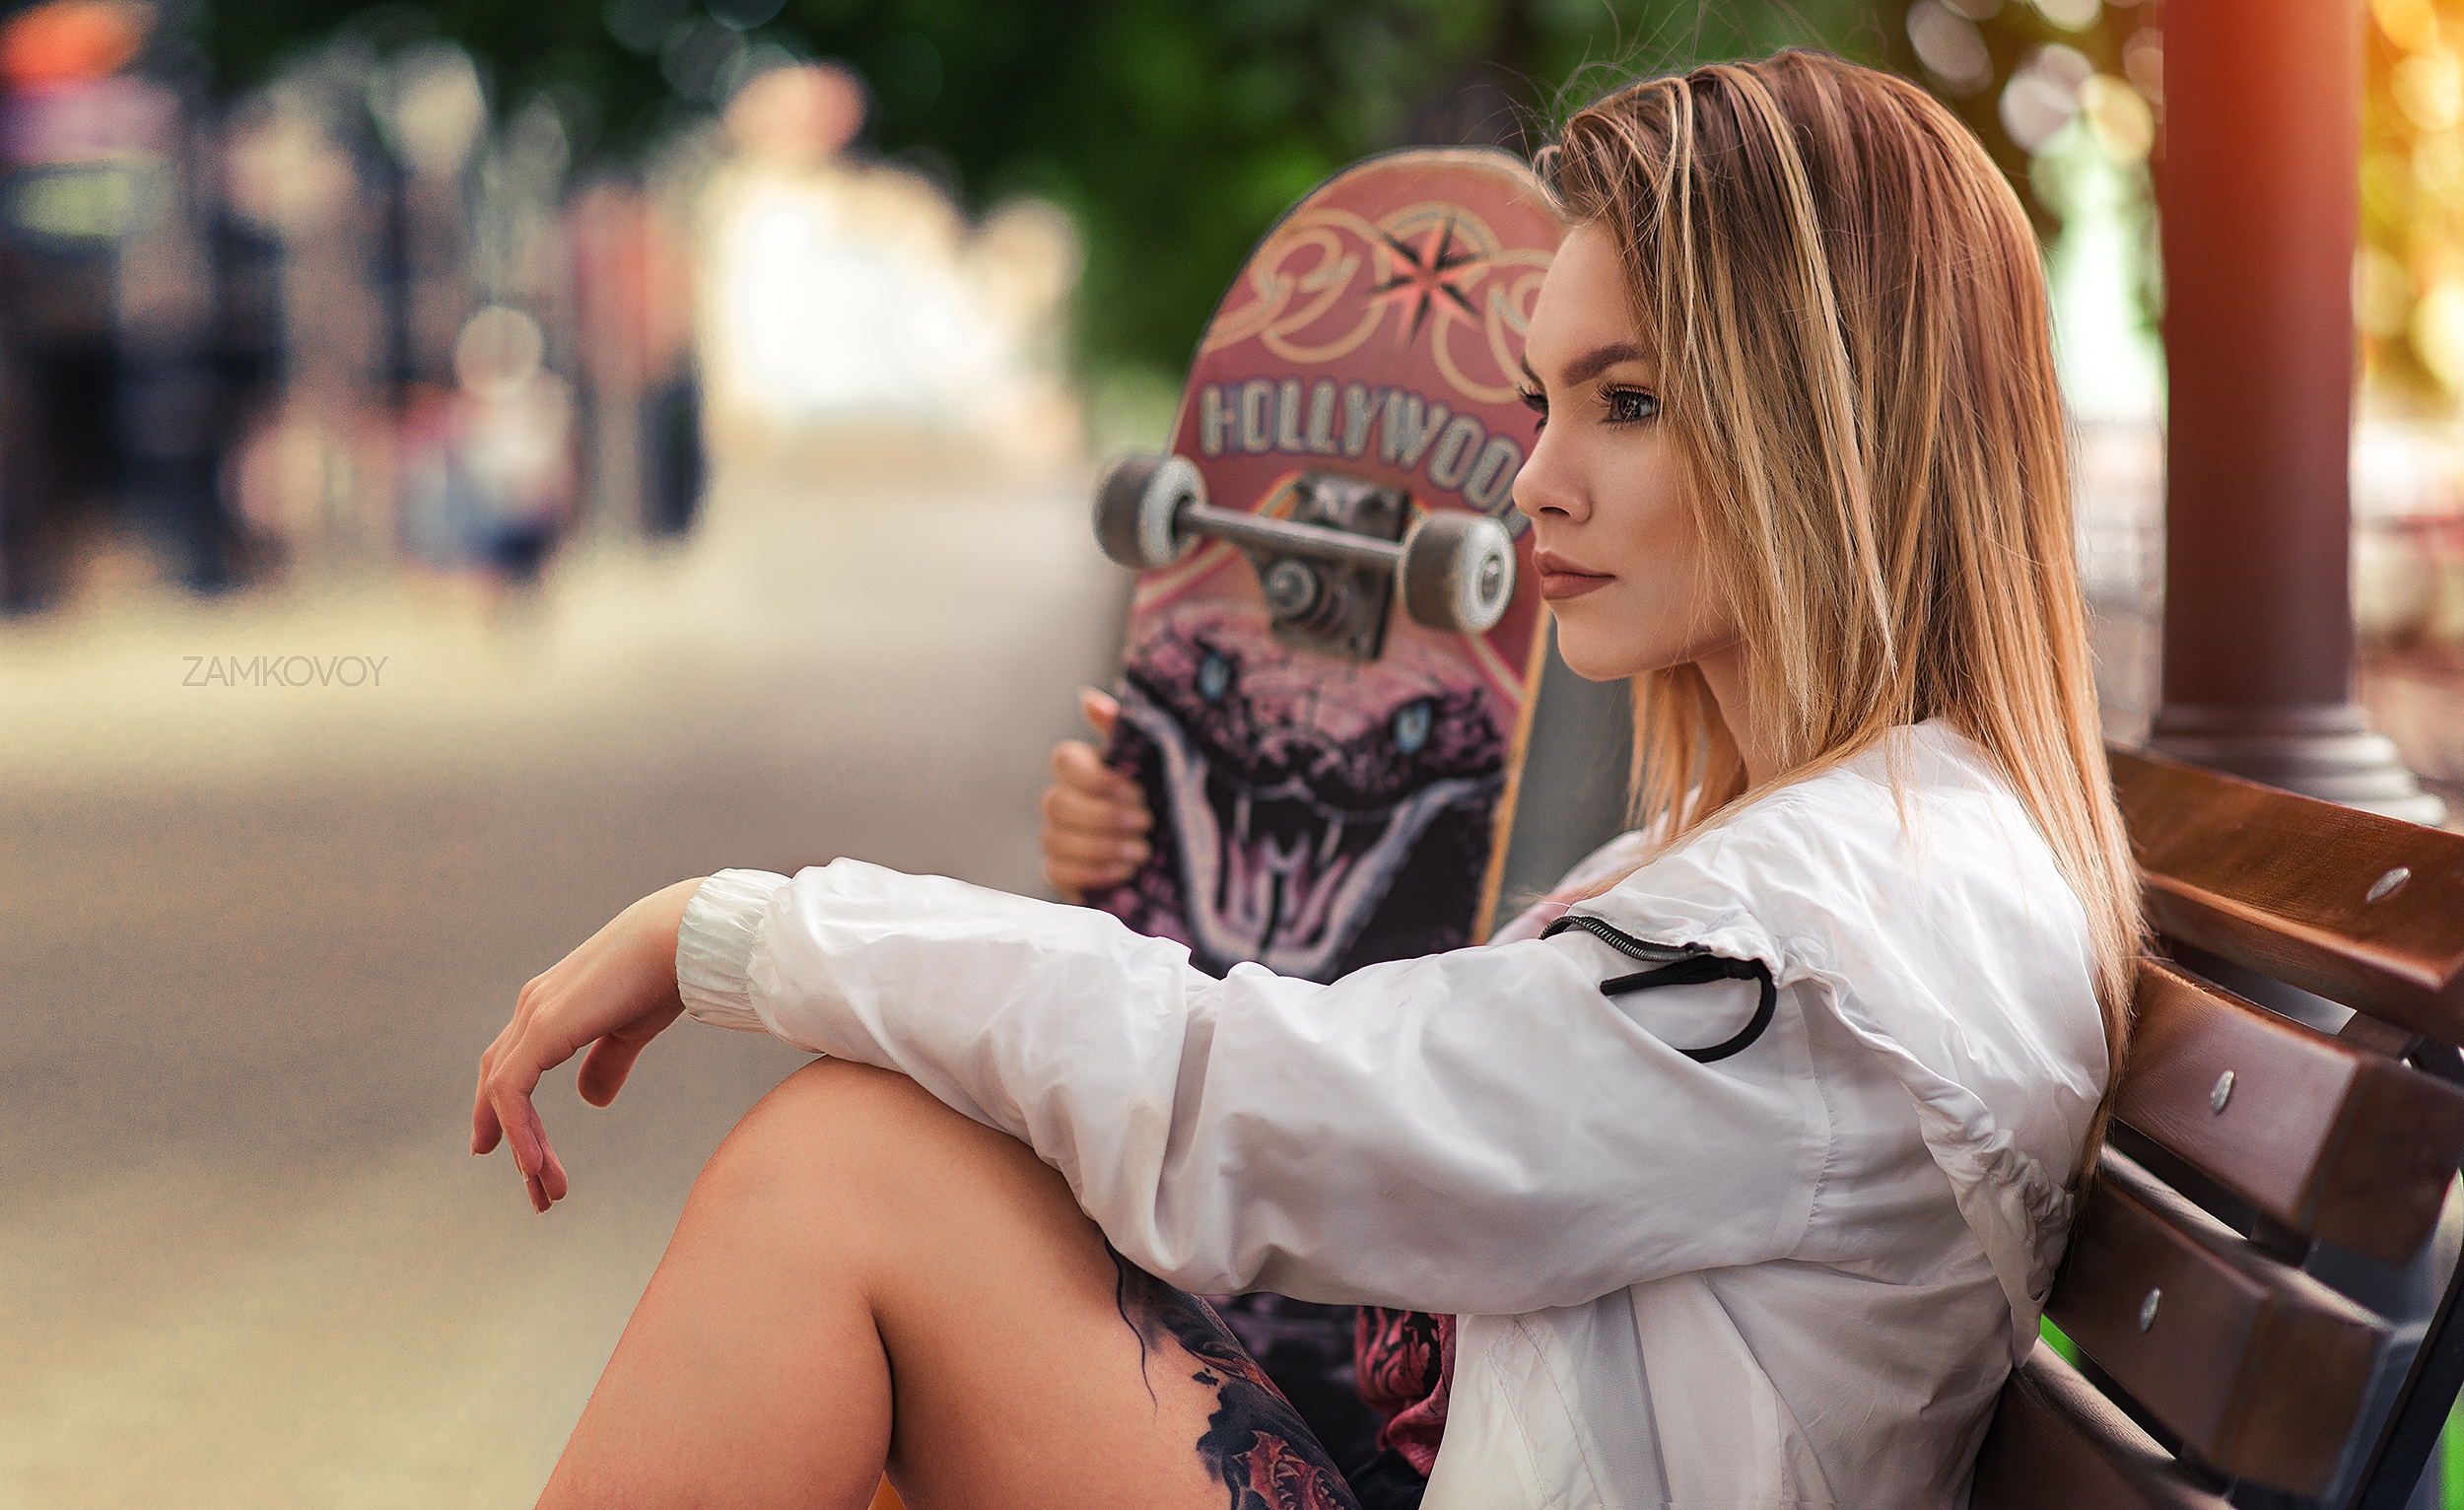 Women Model Looking Into The Distance Skateboard Jacket White Jacket Depth Of Field Bokeh Street Out 2500x1532